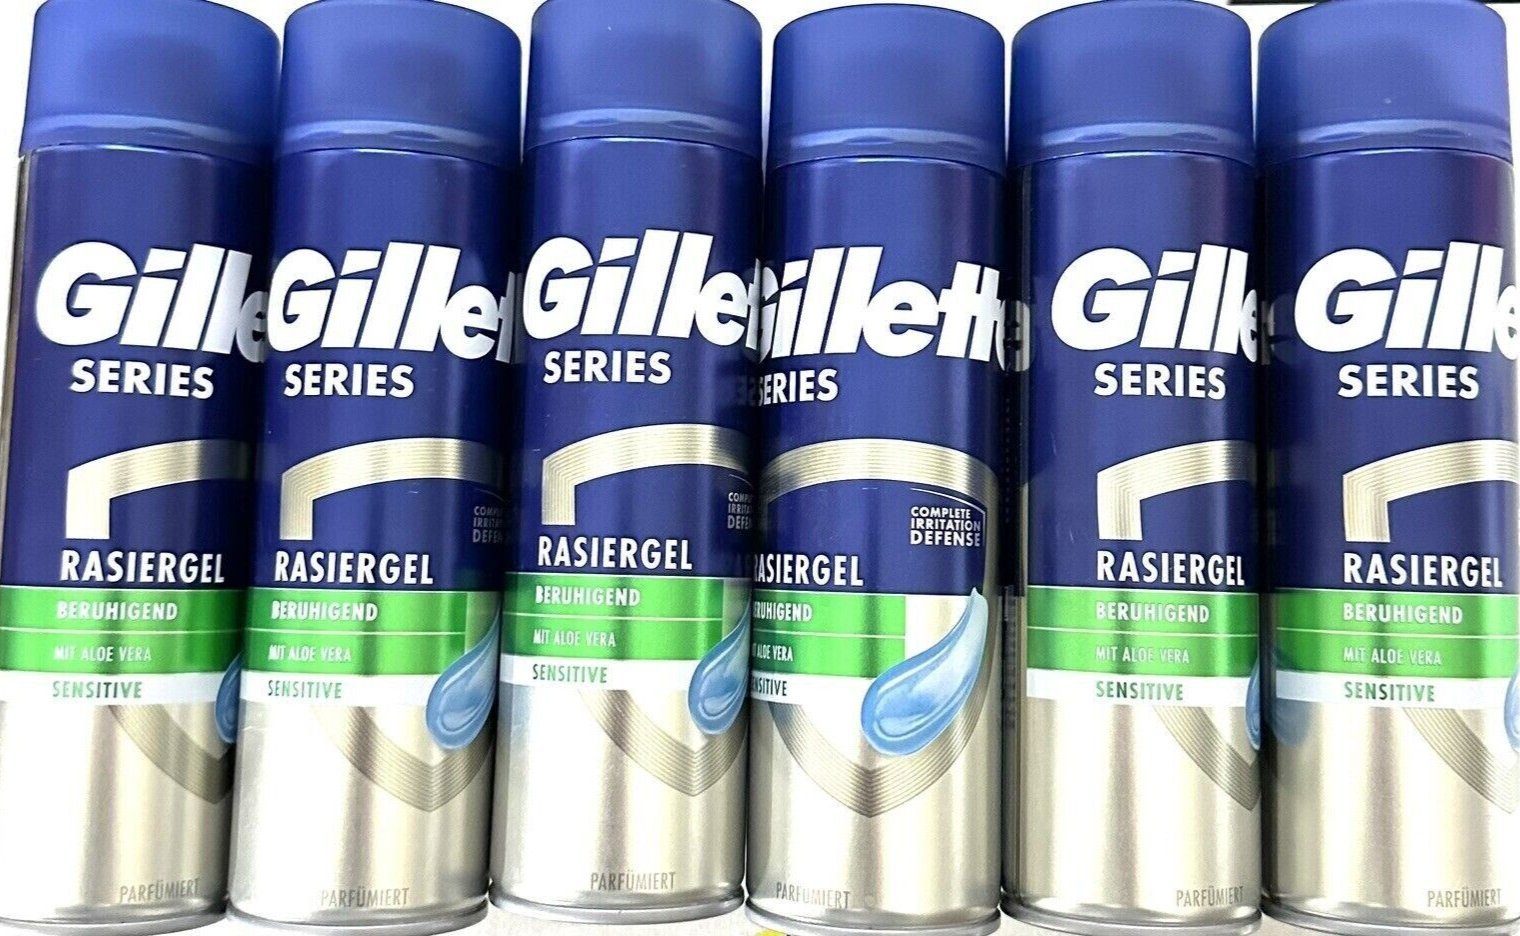 Gillette Rasiergel 6x Gillette Series Aloe Beruhigend mit Vera, Rasiergel 6-tlg